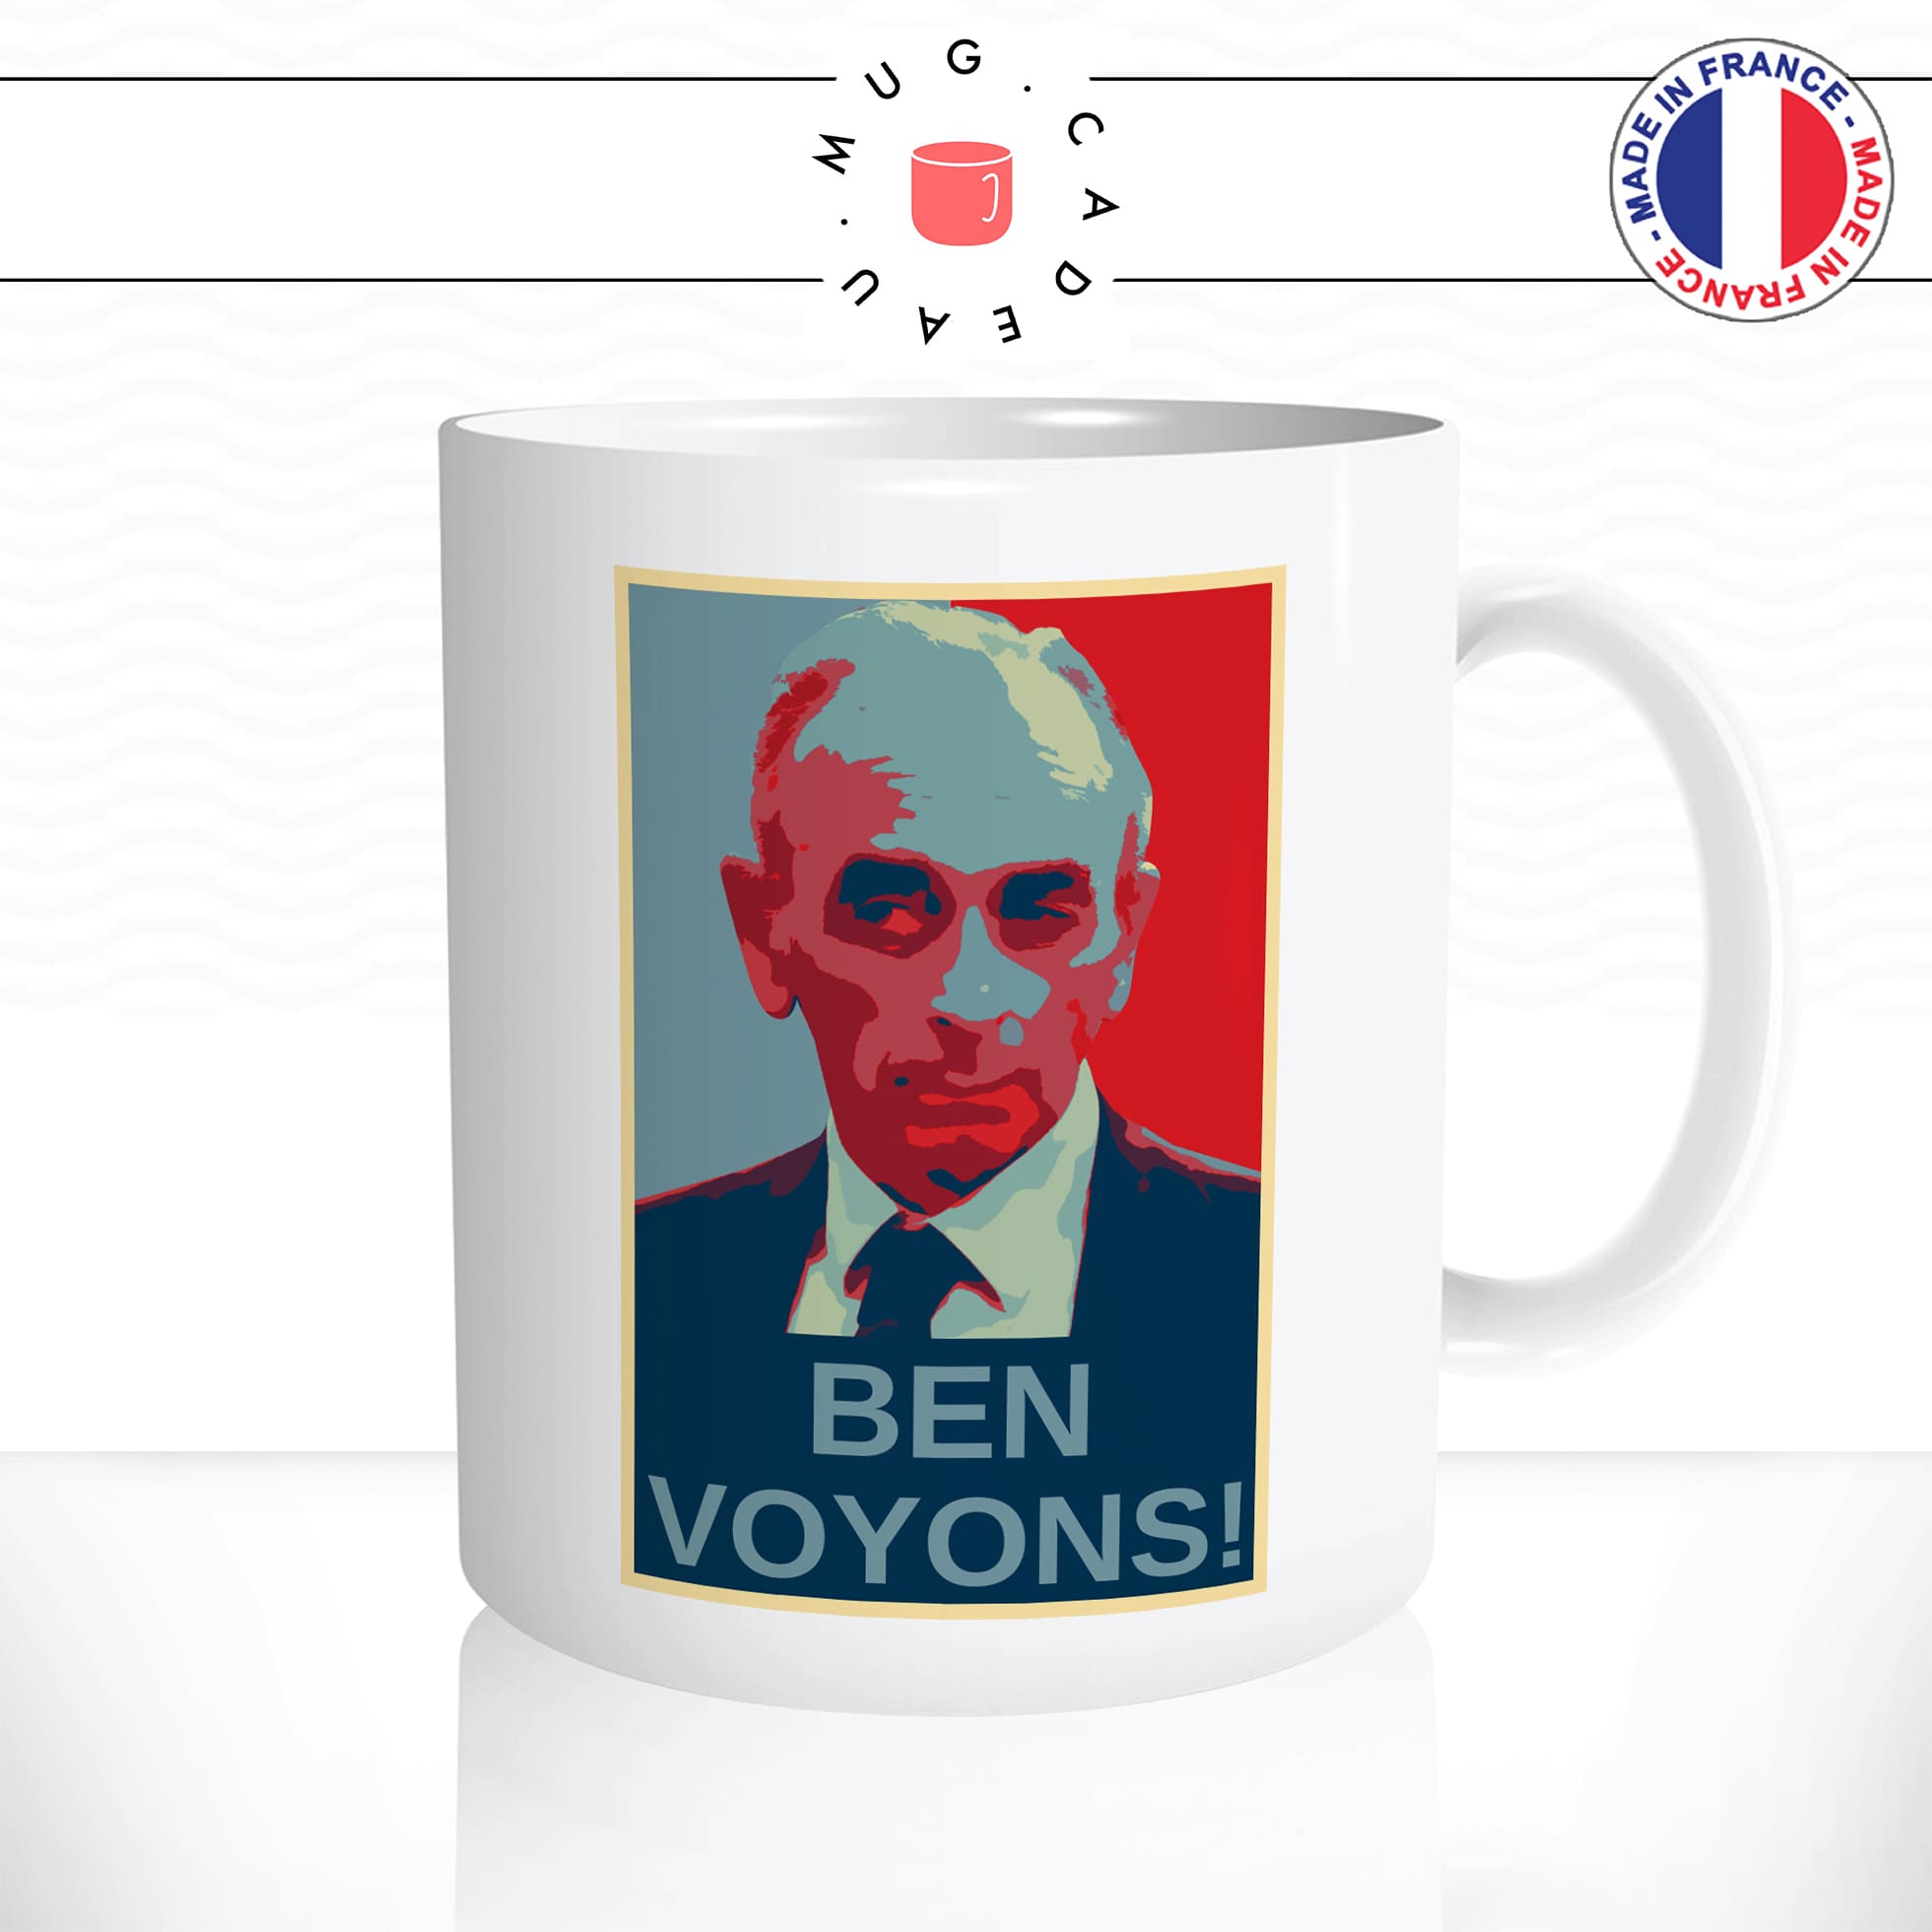 mug-blanc-tasse-idée-cadeau-personnalisé-ben-voyons-eric-zemmour-president-presidentielle-2022-reconquete-parrainage-fun-drole-offrir-original-2